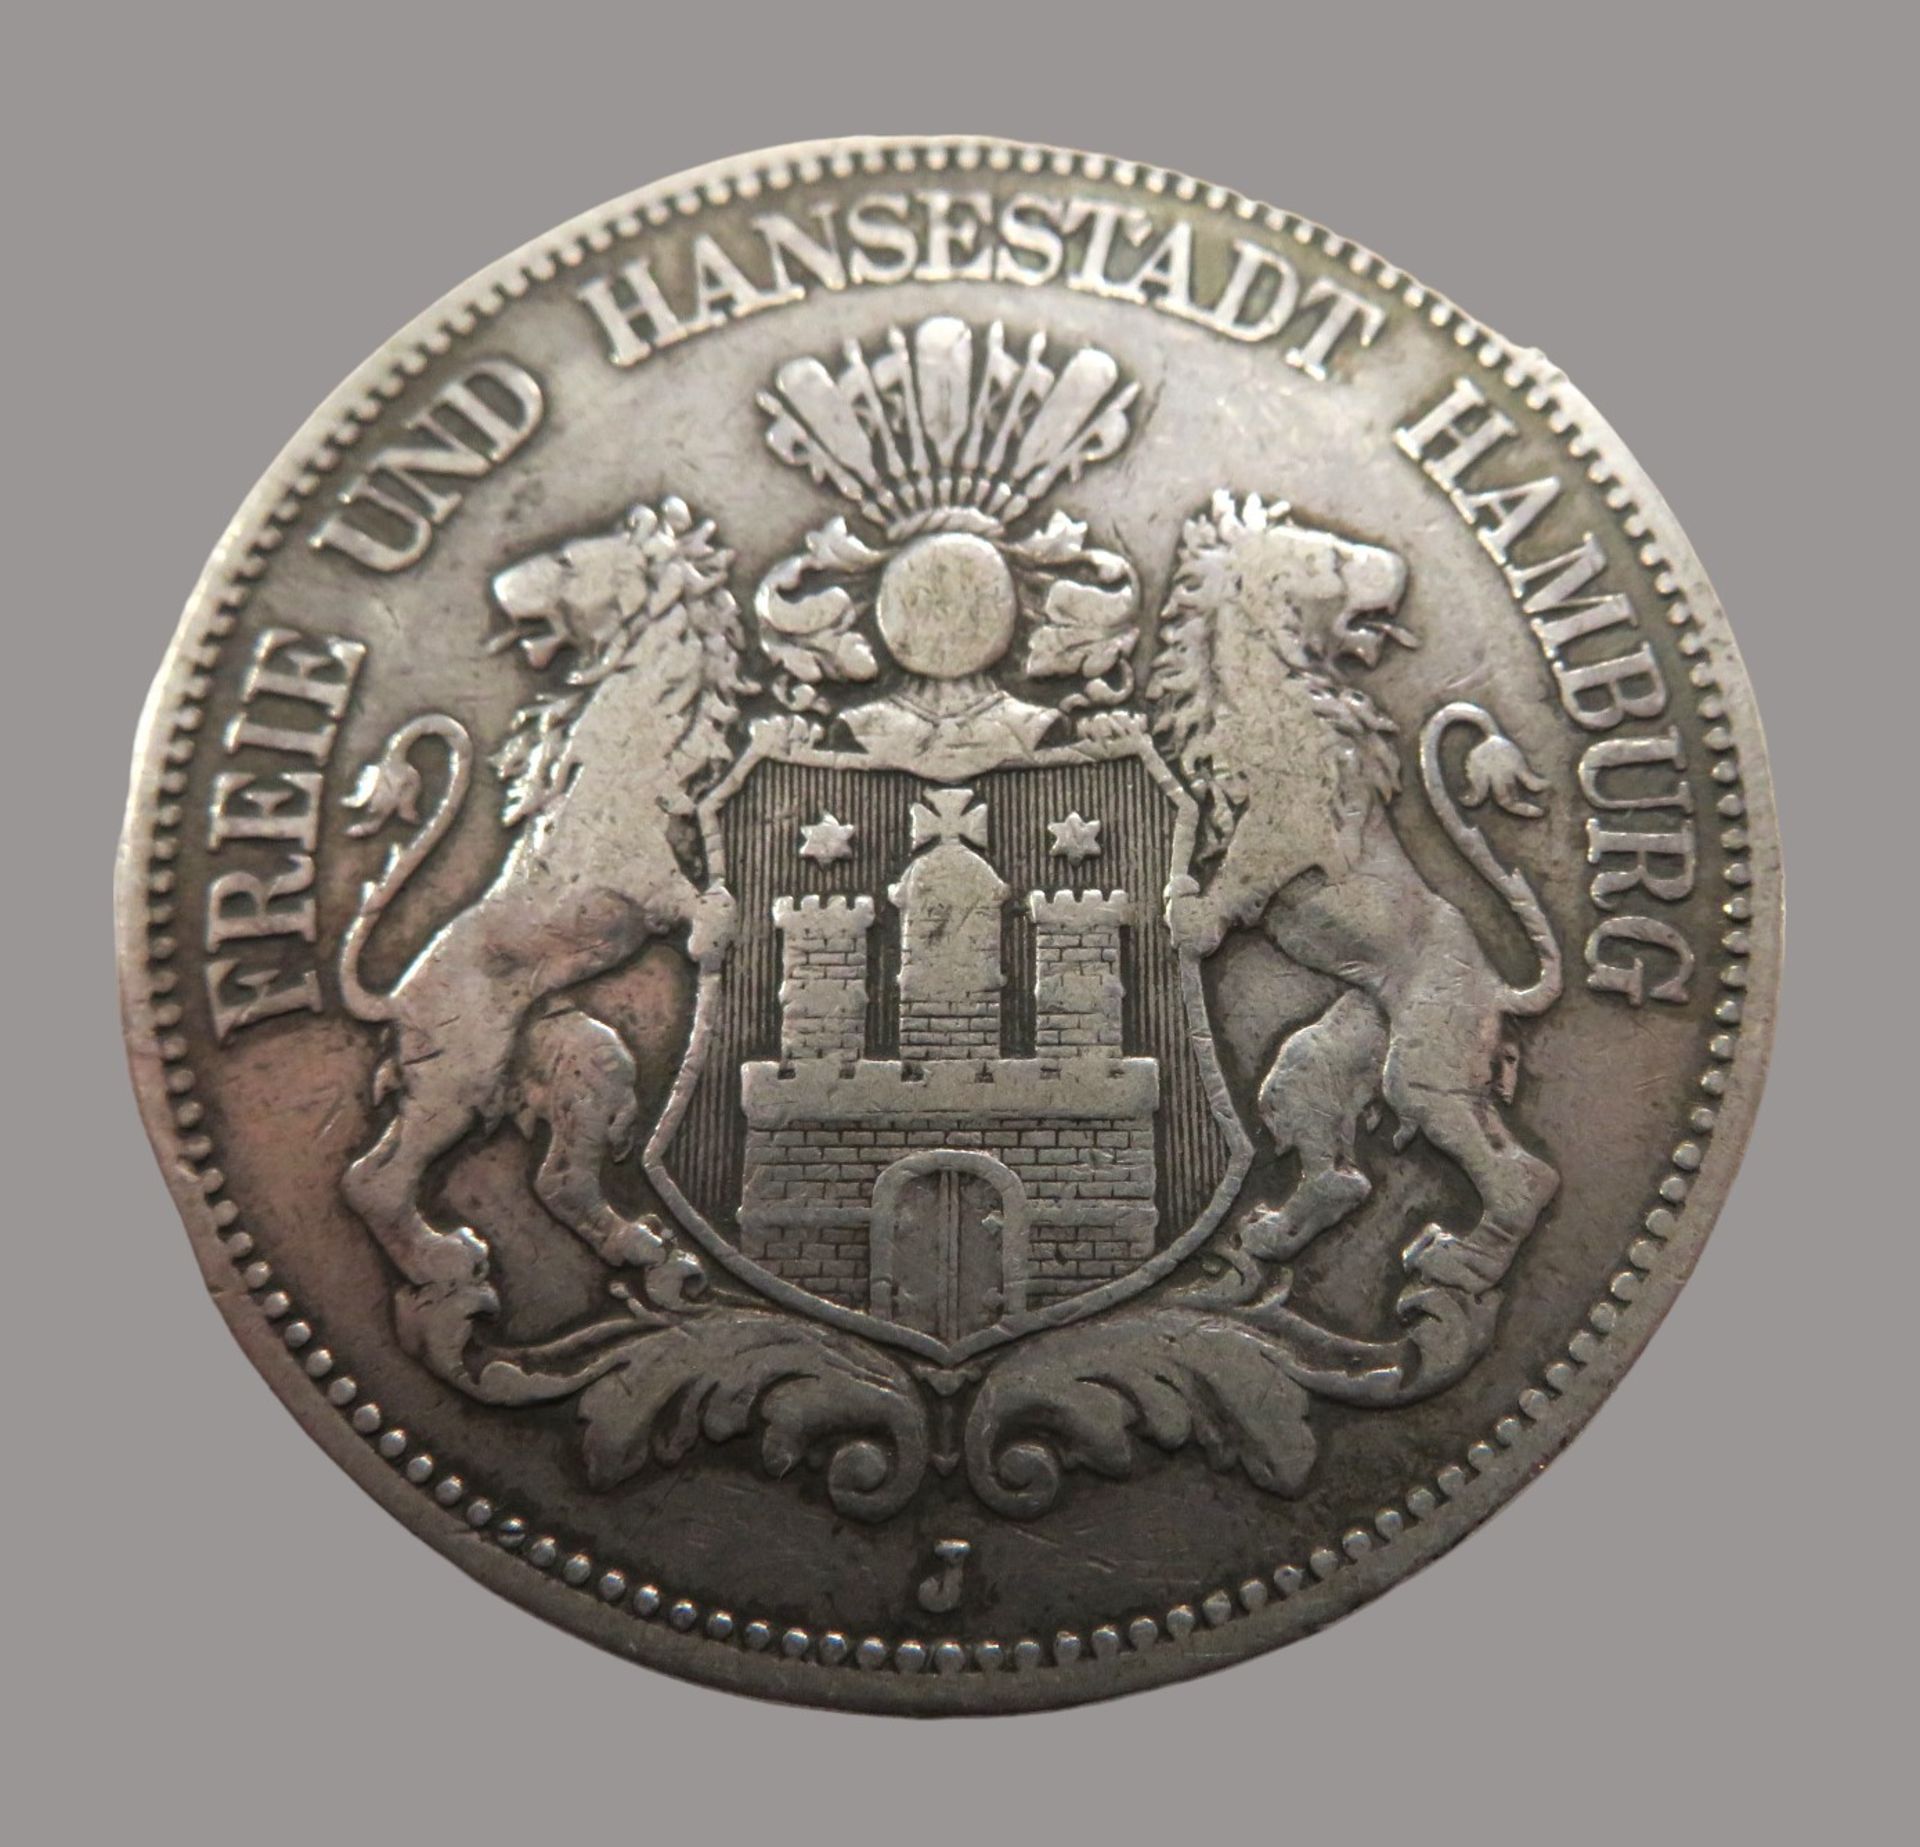 Silbermünze, 5 Mark, Deutsches Reich, Freie und Hansestadt Hamburg, 1876 J, Silber, 67,3 g, d 3,7 c